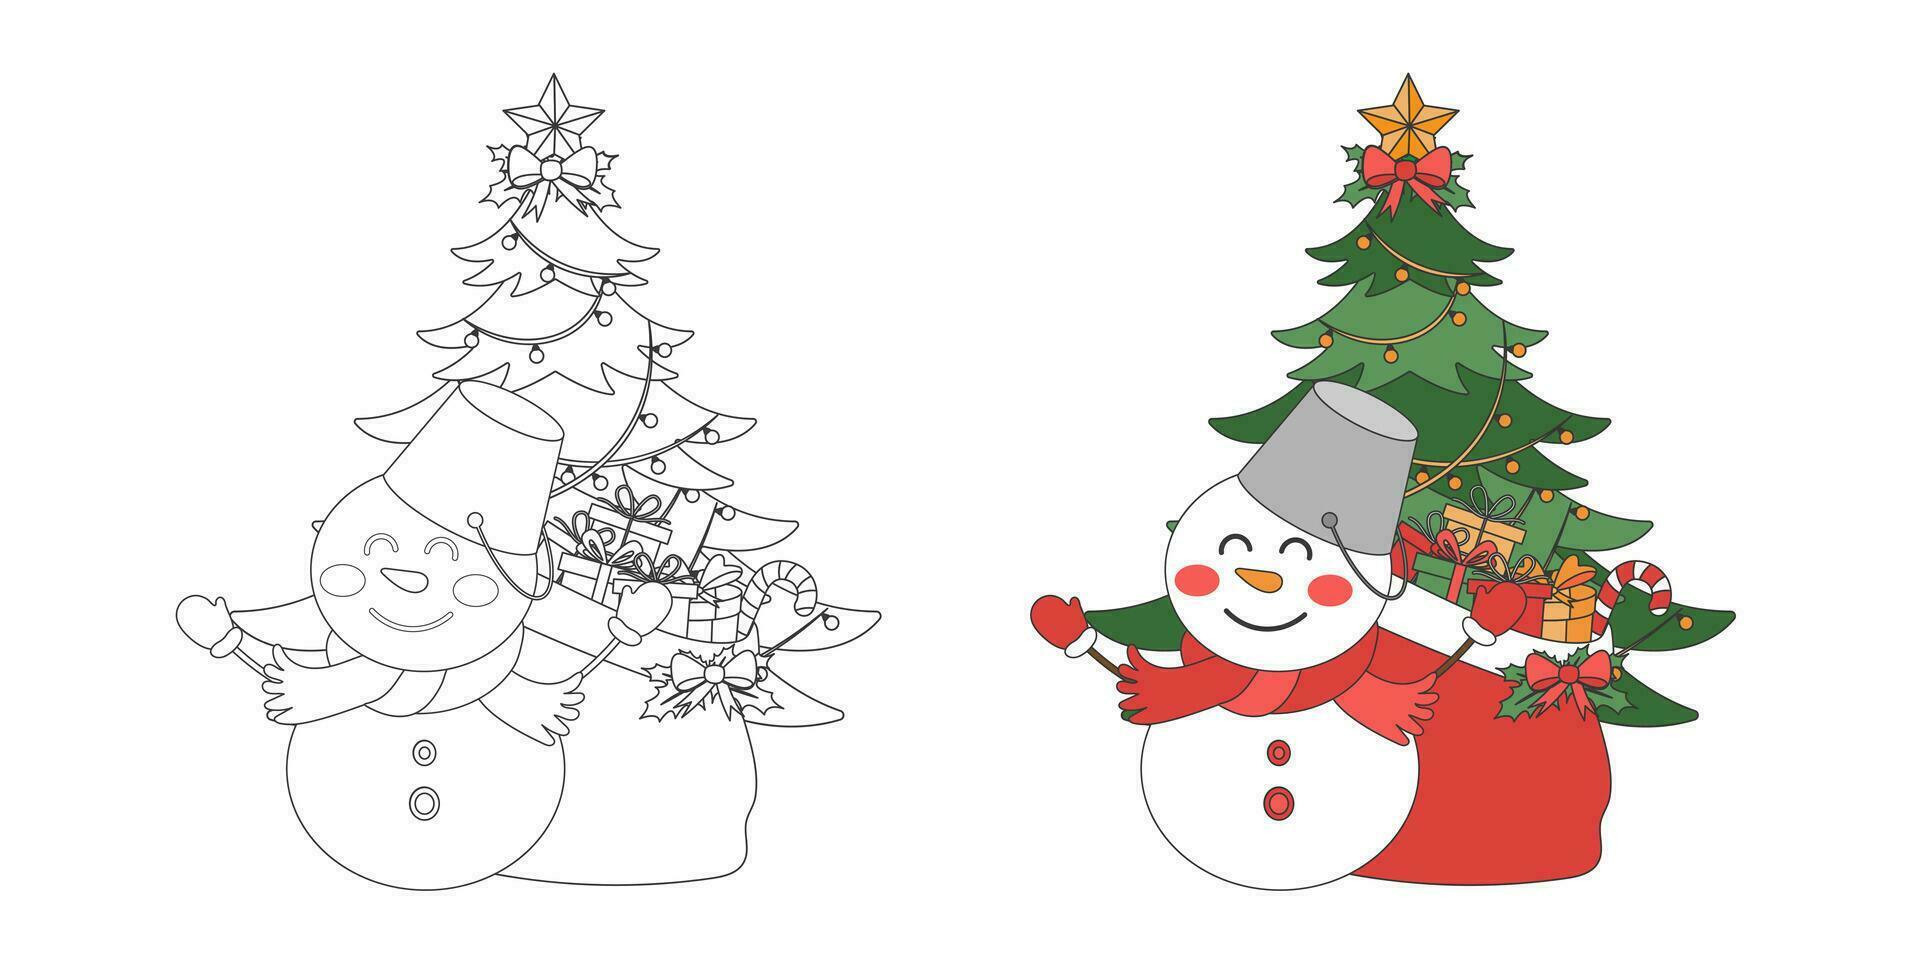 snögubbe, jul gåva väska och jul träd, jul tema linje konst klotter tecknad serie illustration, färg bok för ungar, glad jul. vektor